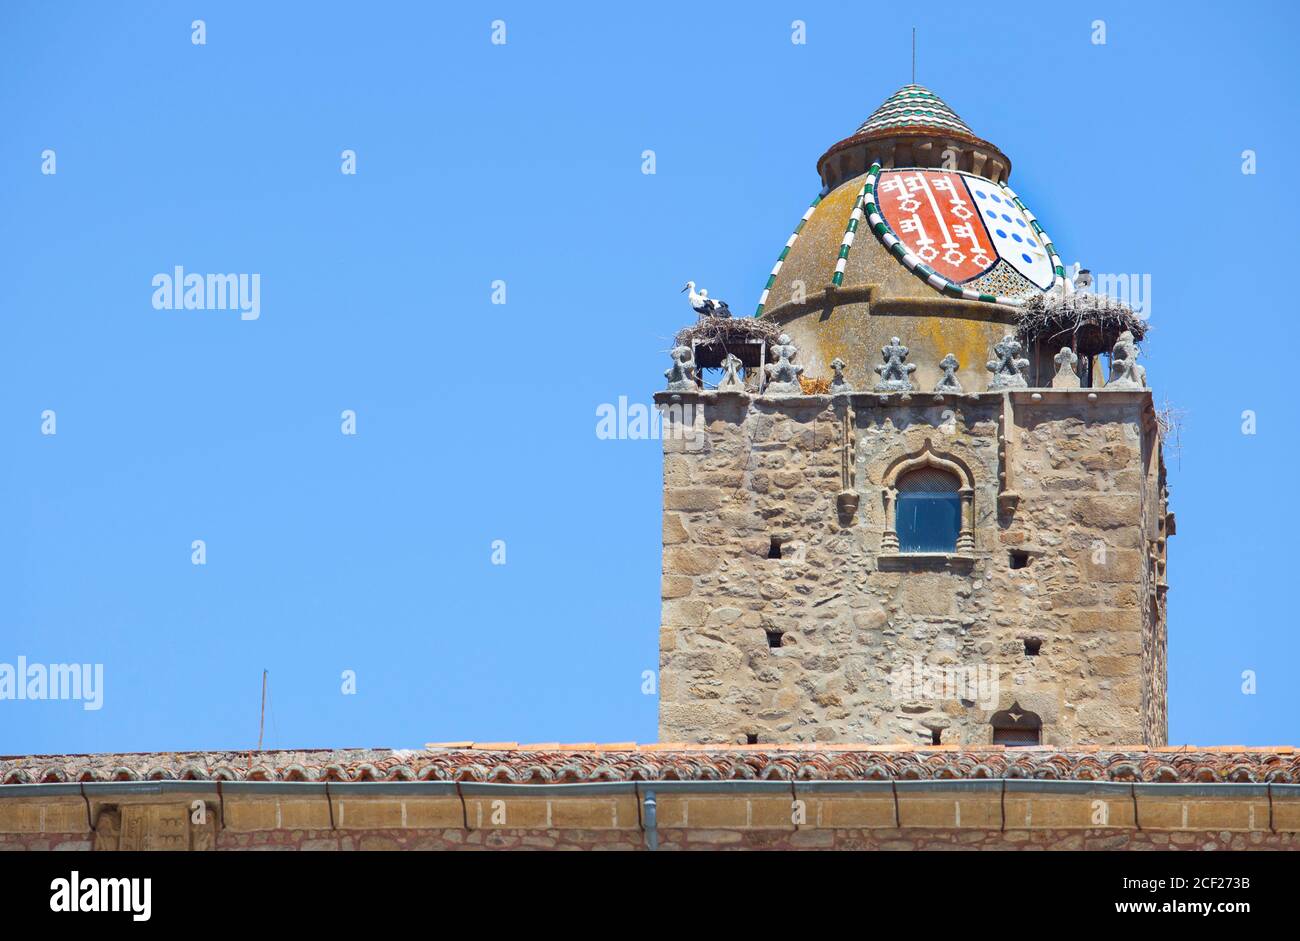 Torre Alfiler, un campanario gótico del siglo 14 adornado con tejas vidriadas y el lugar de anidación favorito para las cigüeñas, Trujillo, España. Foto de stock